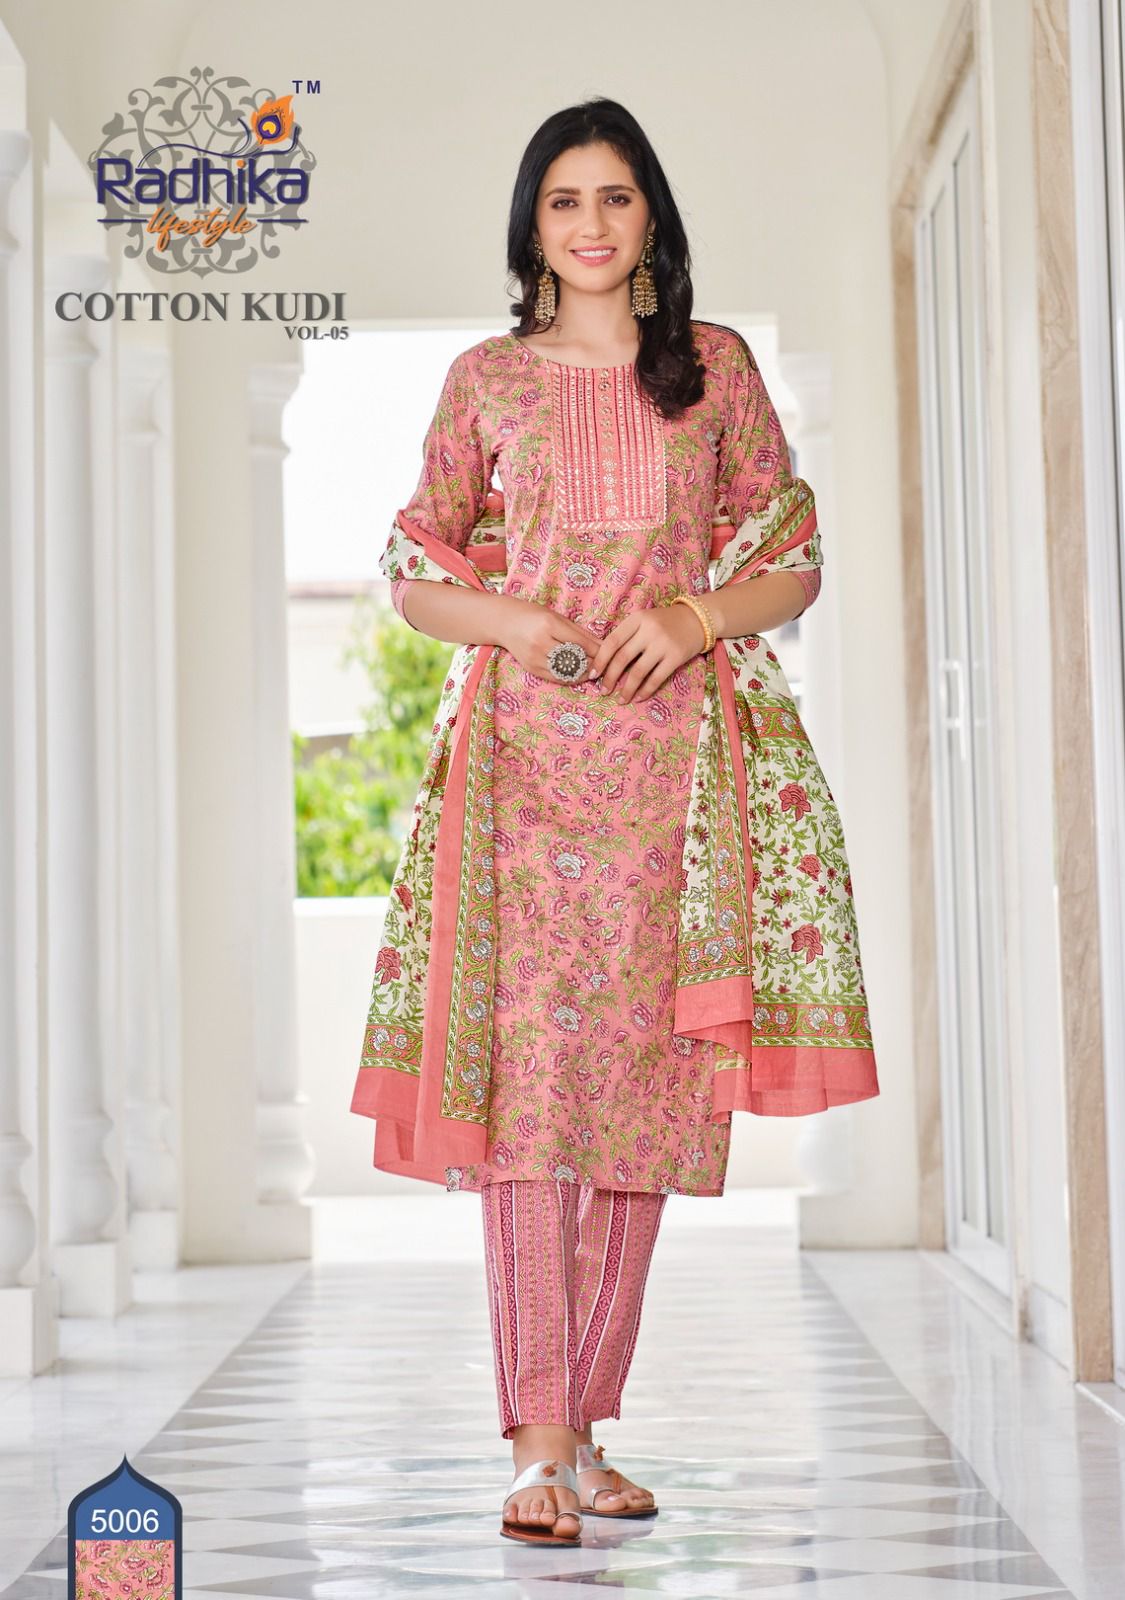 Radhika Cotton Kudi Vol 5 collection 8